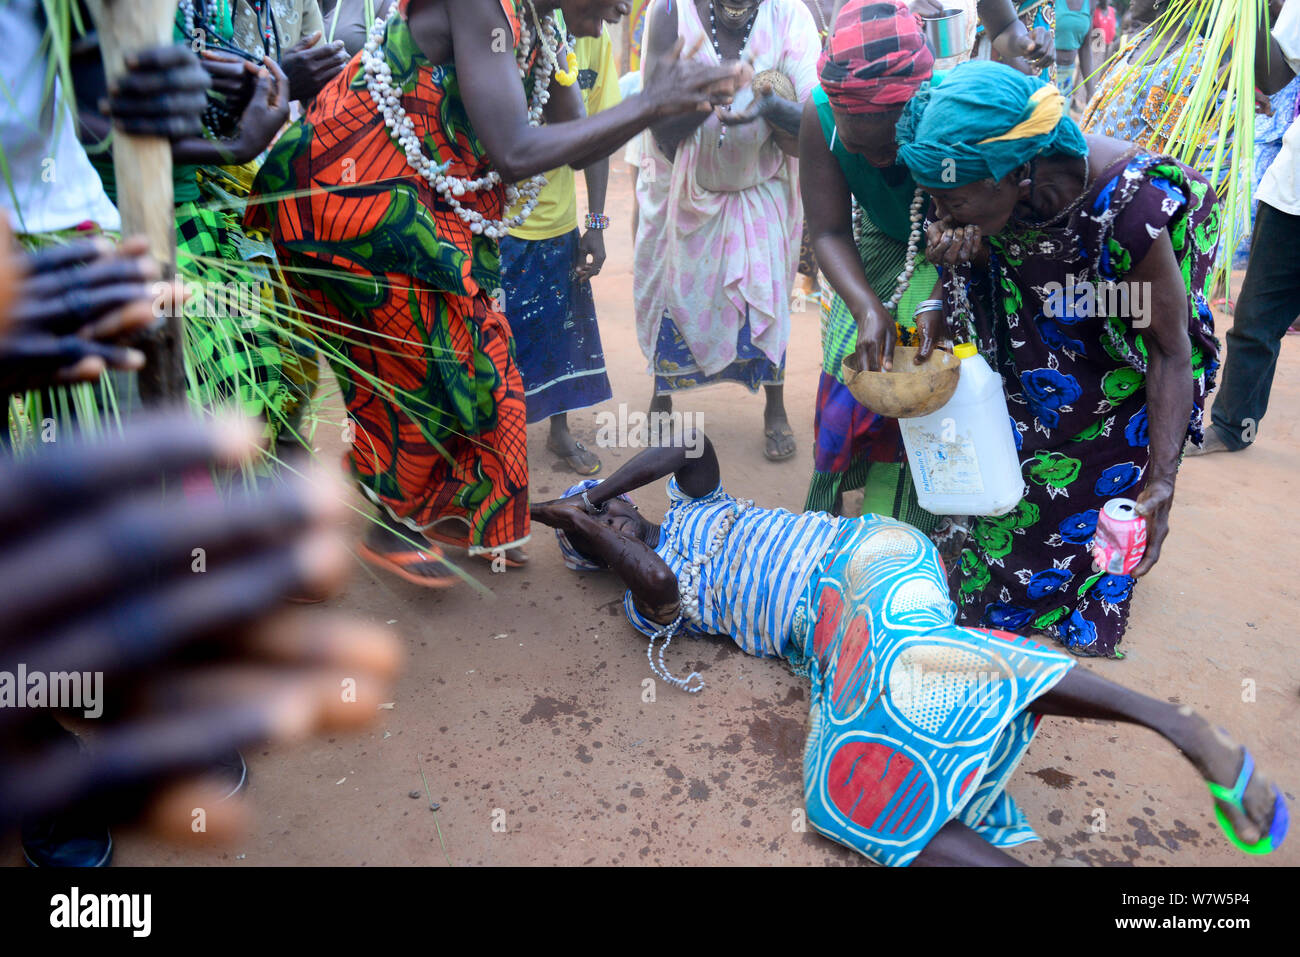 Auf dem Boden liegende Frau mit Wasser während der Nalu rituellen Zeremonie sprengte, Cabedu Dorf, Guinea-Bissau, Dezember 2013. Stockfoto